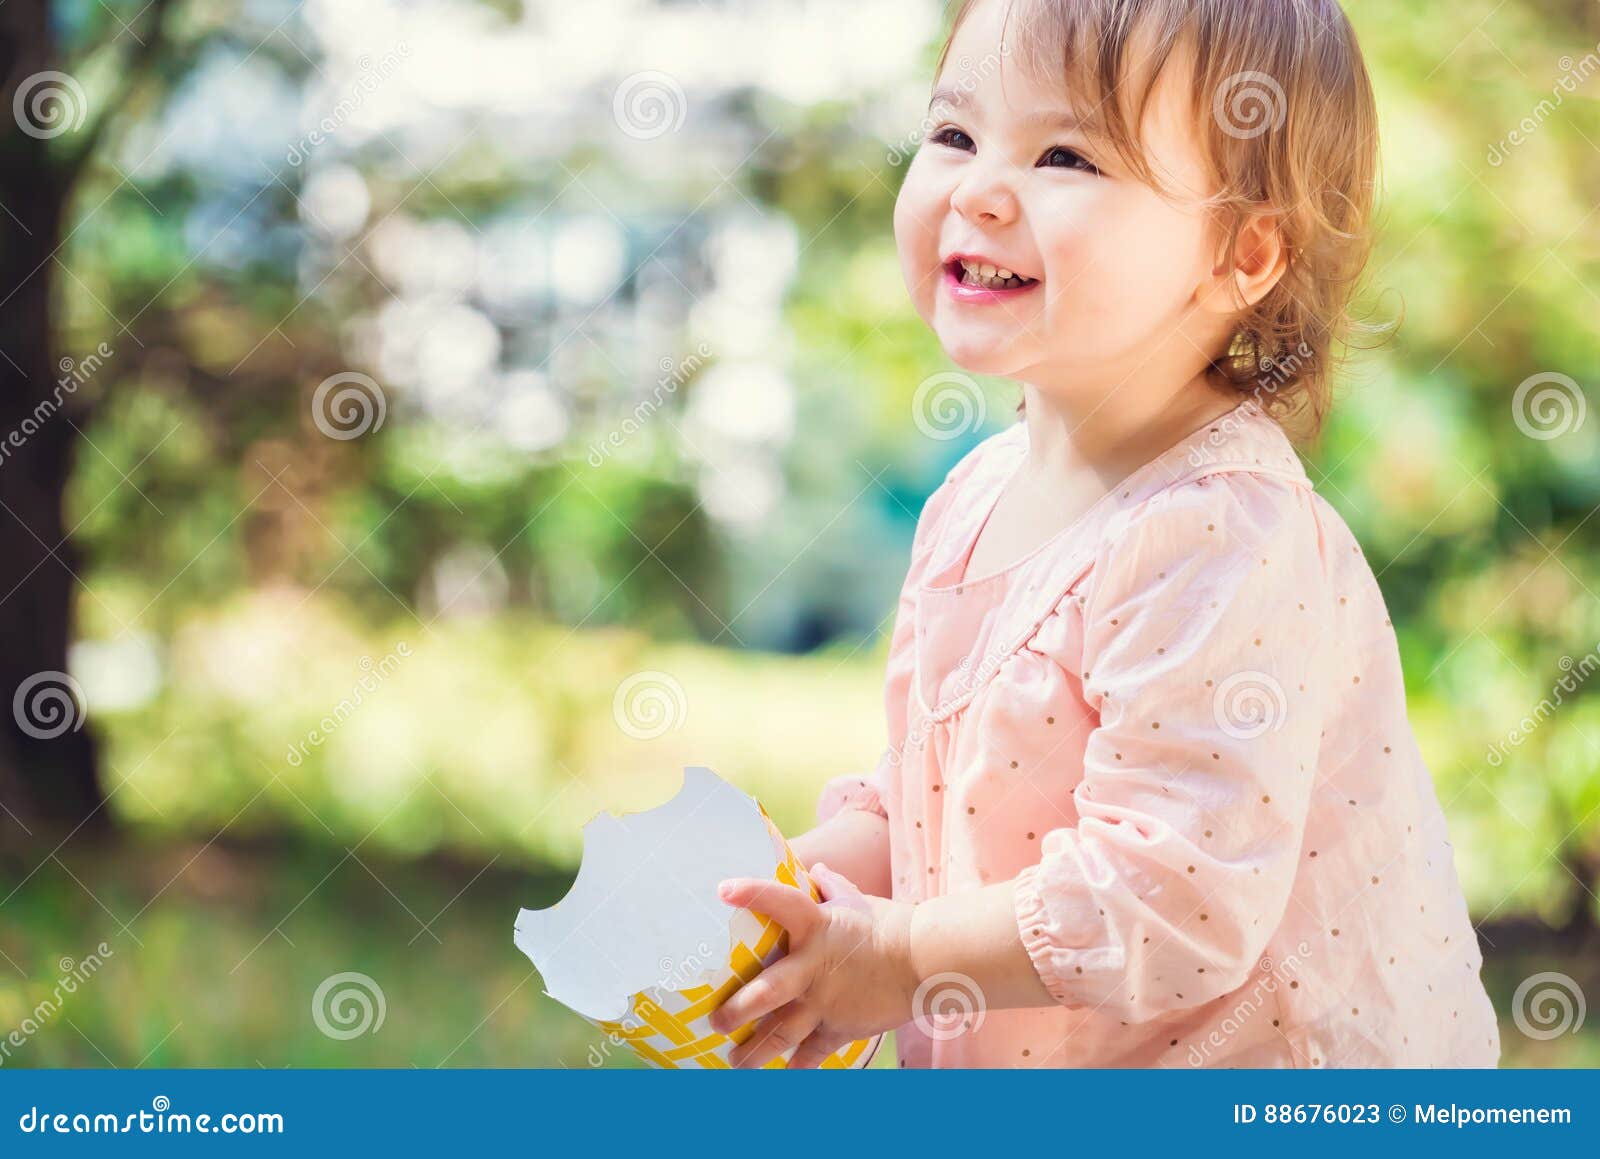 241,746 Smile Toddler Stock Photos - Free & Royalty-Free Stock